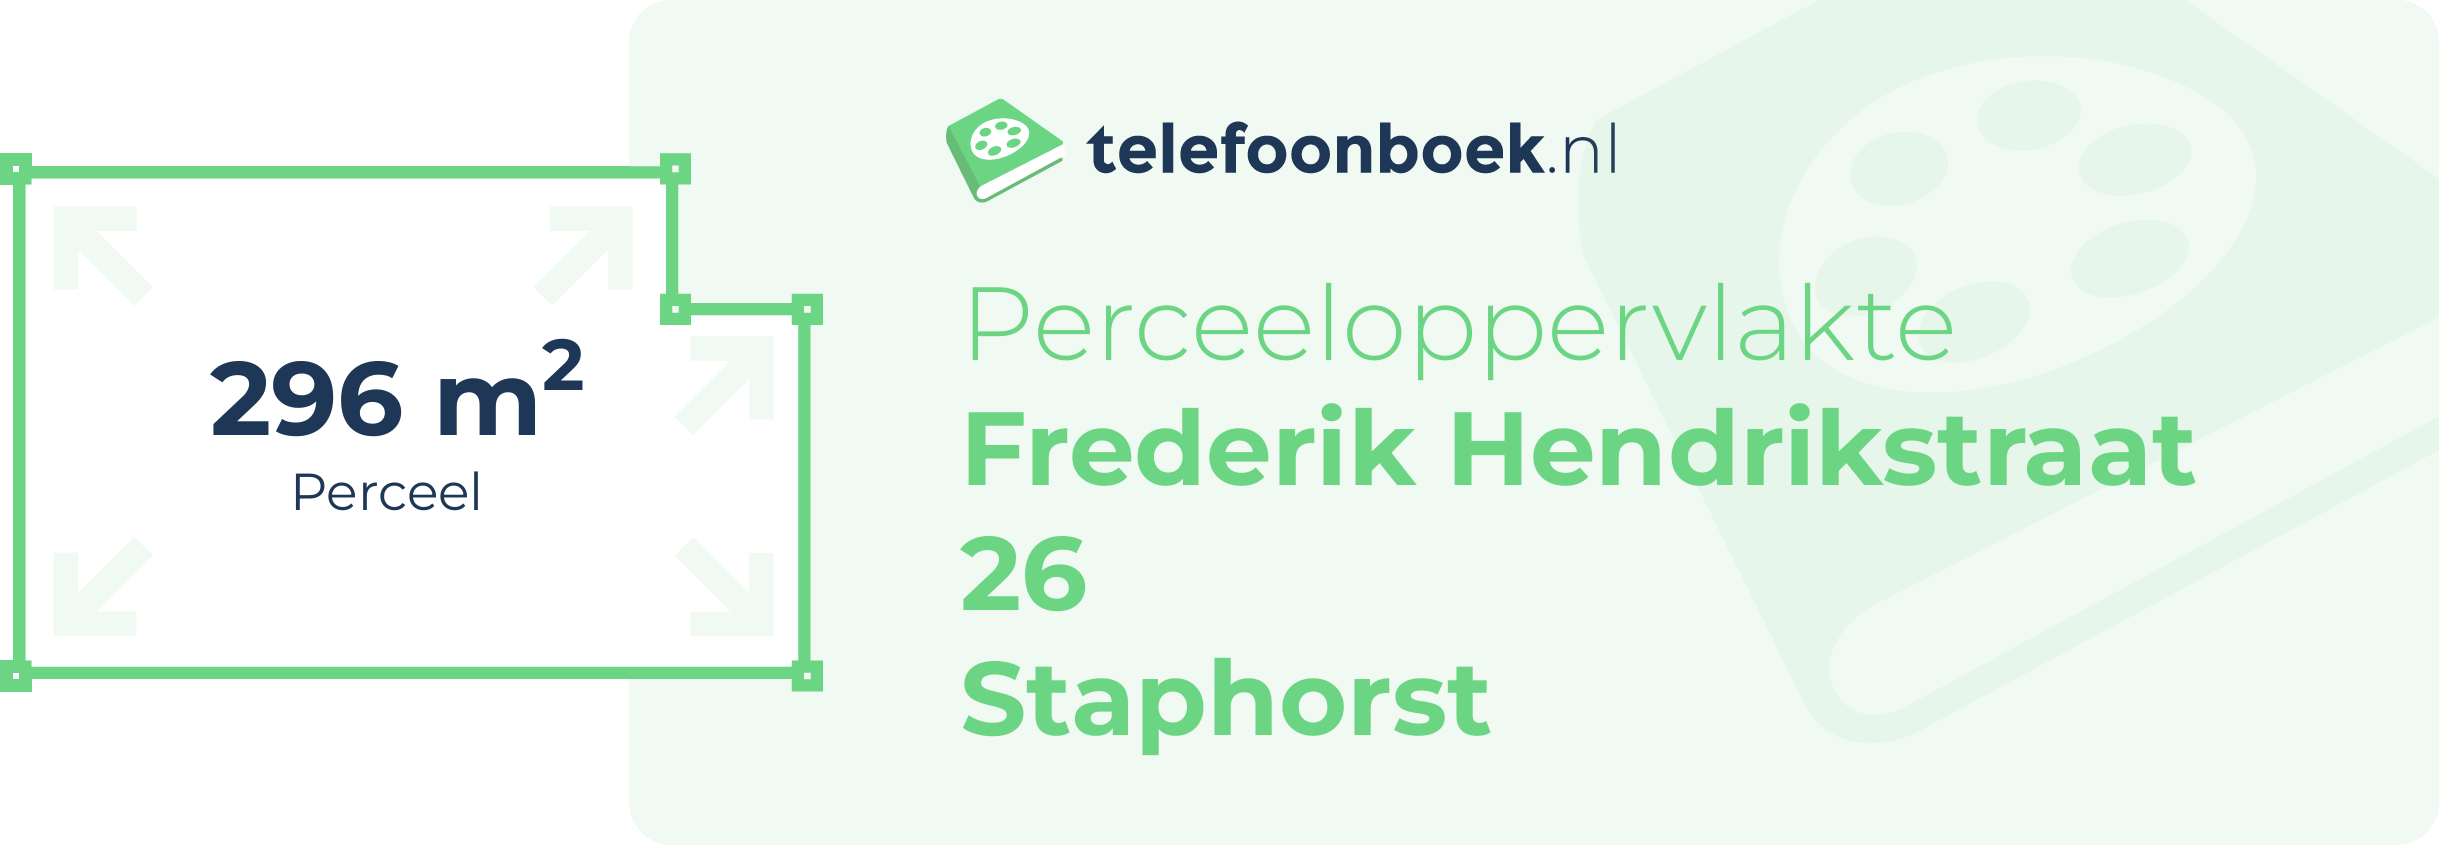 Perceeloppervlakte Frederik Hendrikstraat 26 Staphorst